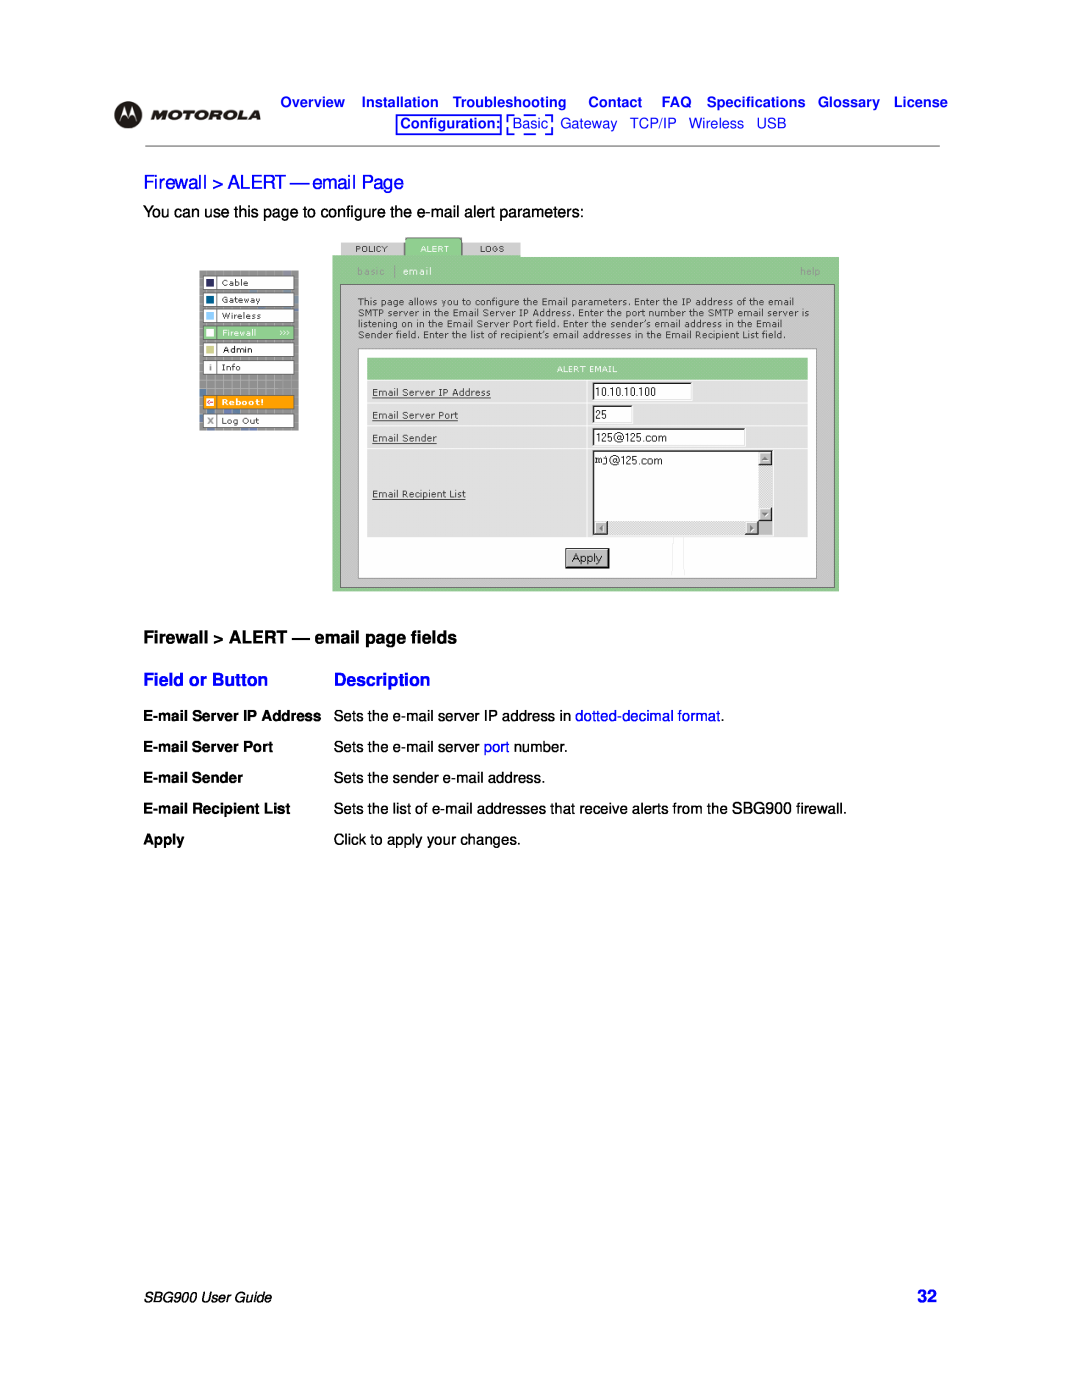 Motorola SBG900 manual Firewall ALERT - email Page, Firewall ALERT - email page fields, Field or Button, Description 